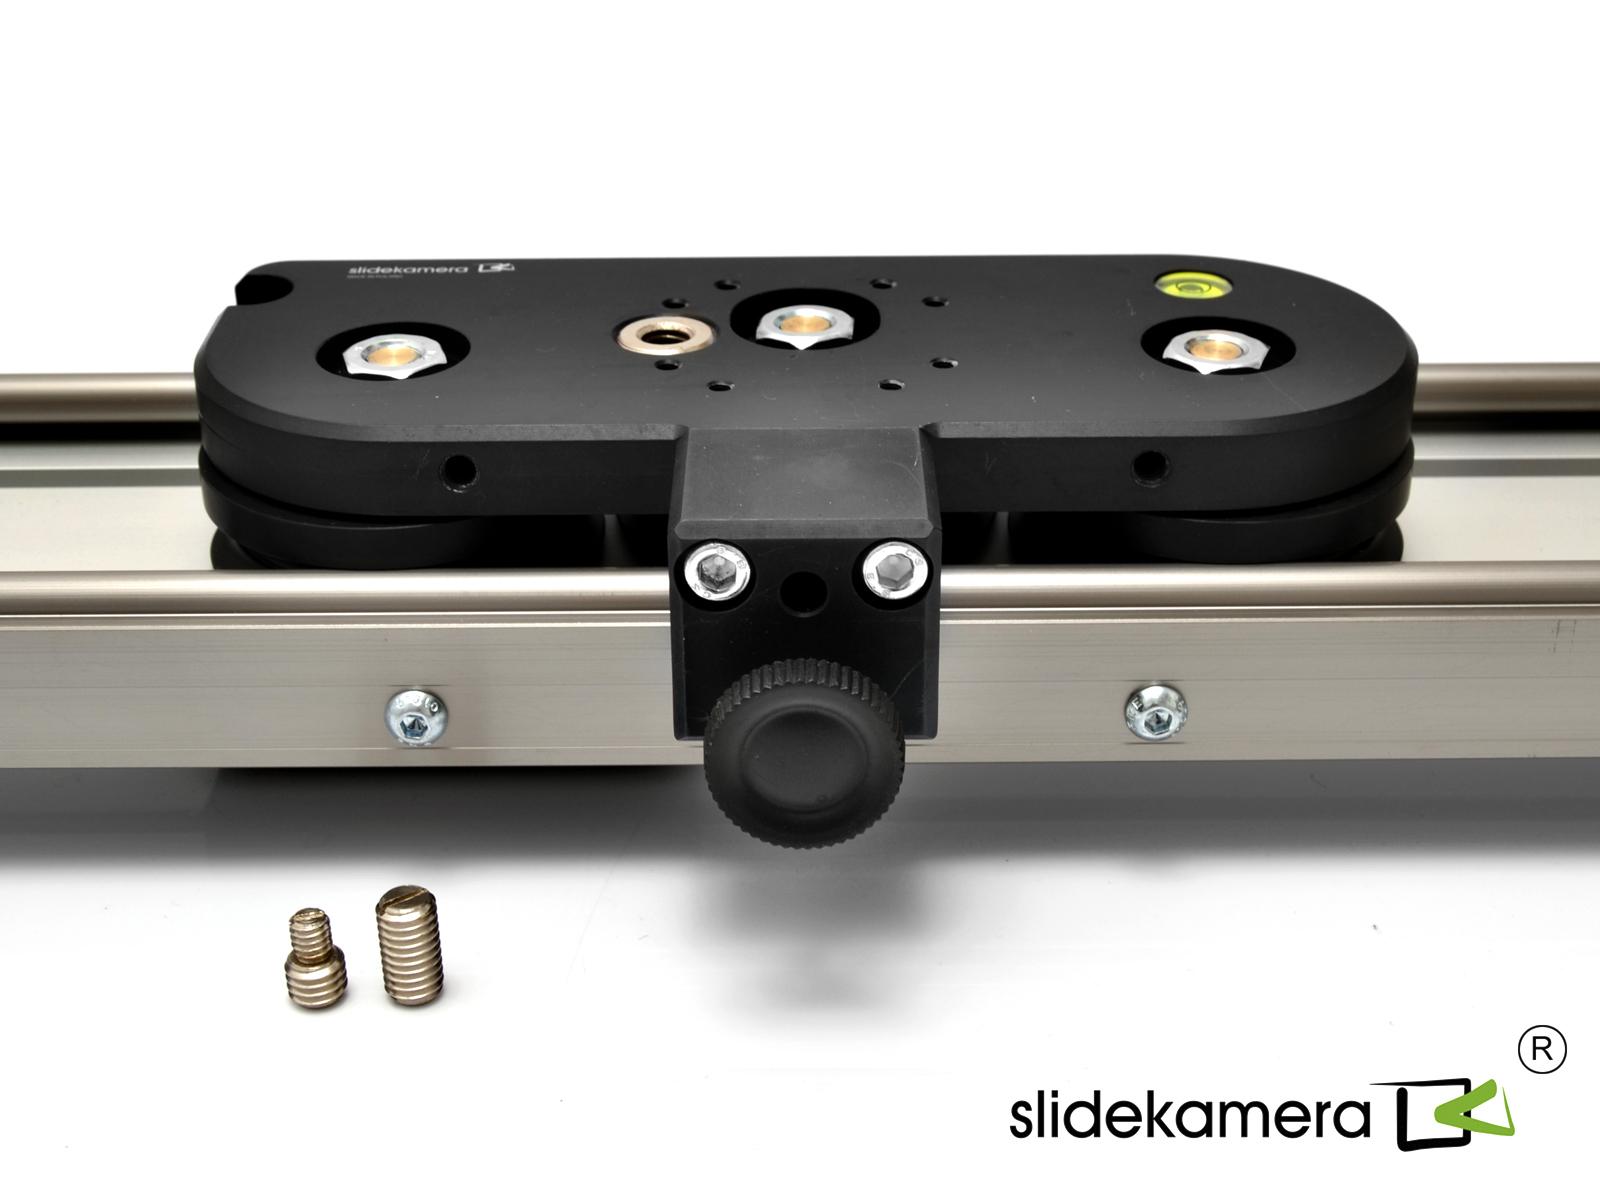  SlideKamera X-SLIDER 1500 BASIC   Ultra-mart